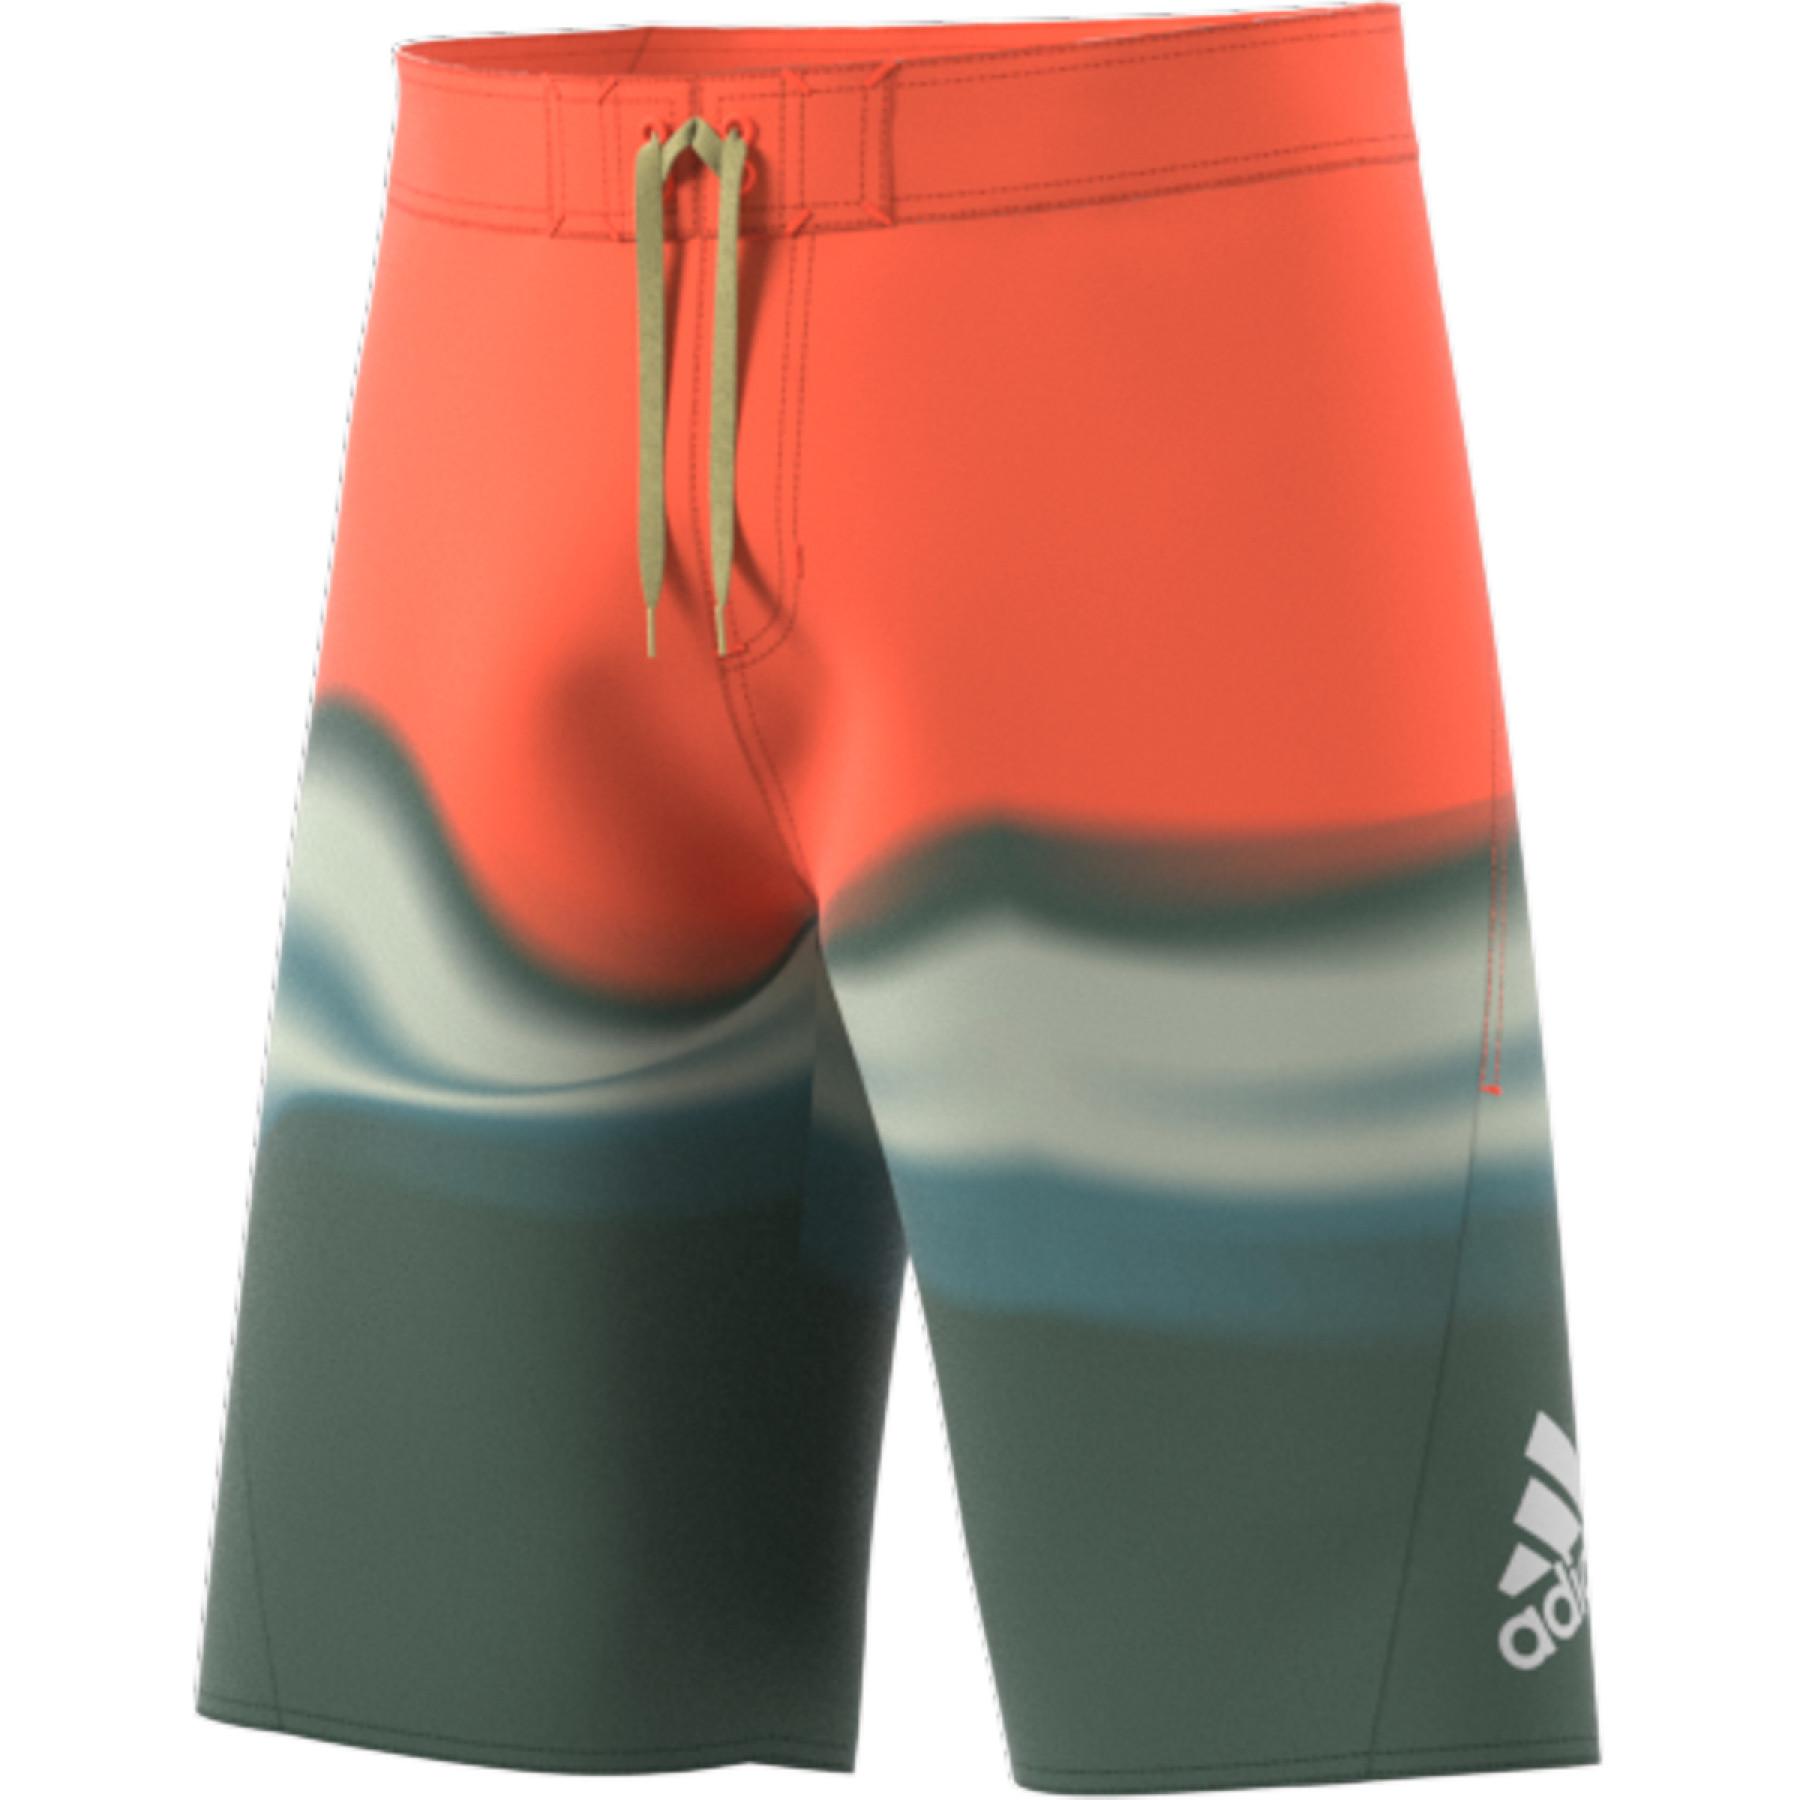 Pantalones cortos de natación adidas KneeLength Graphic Board